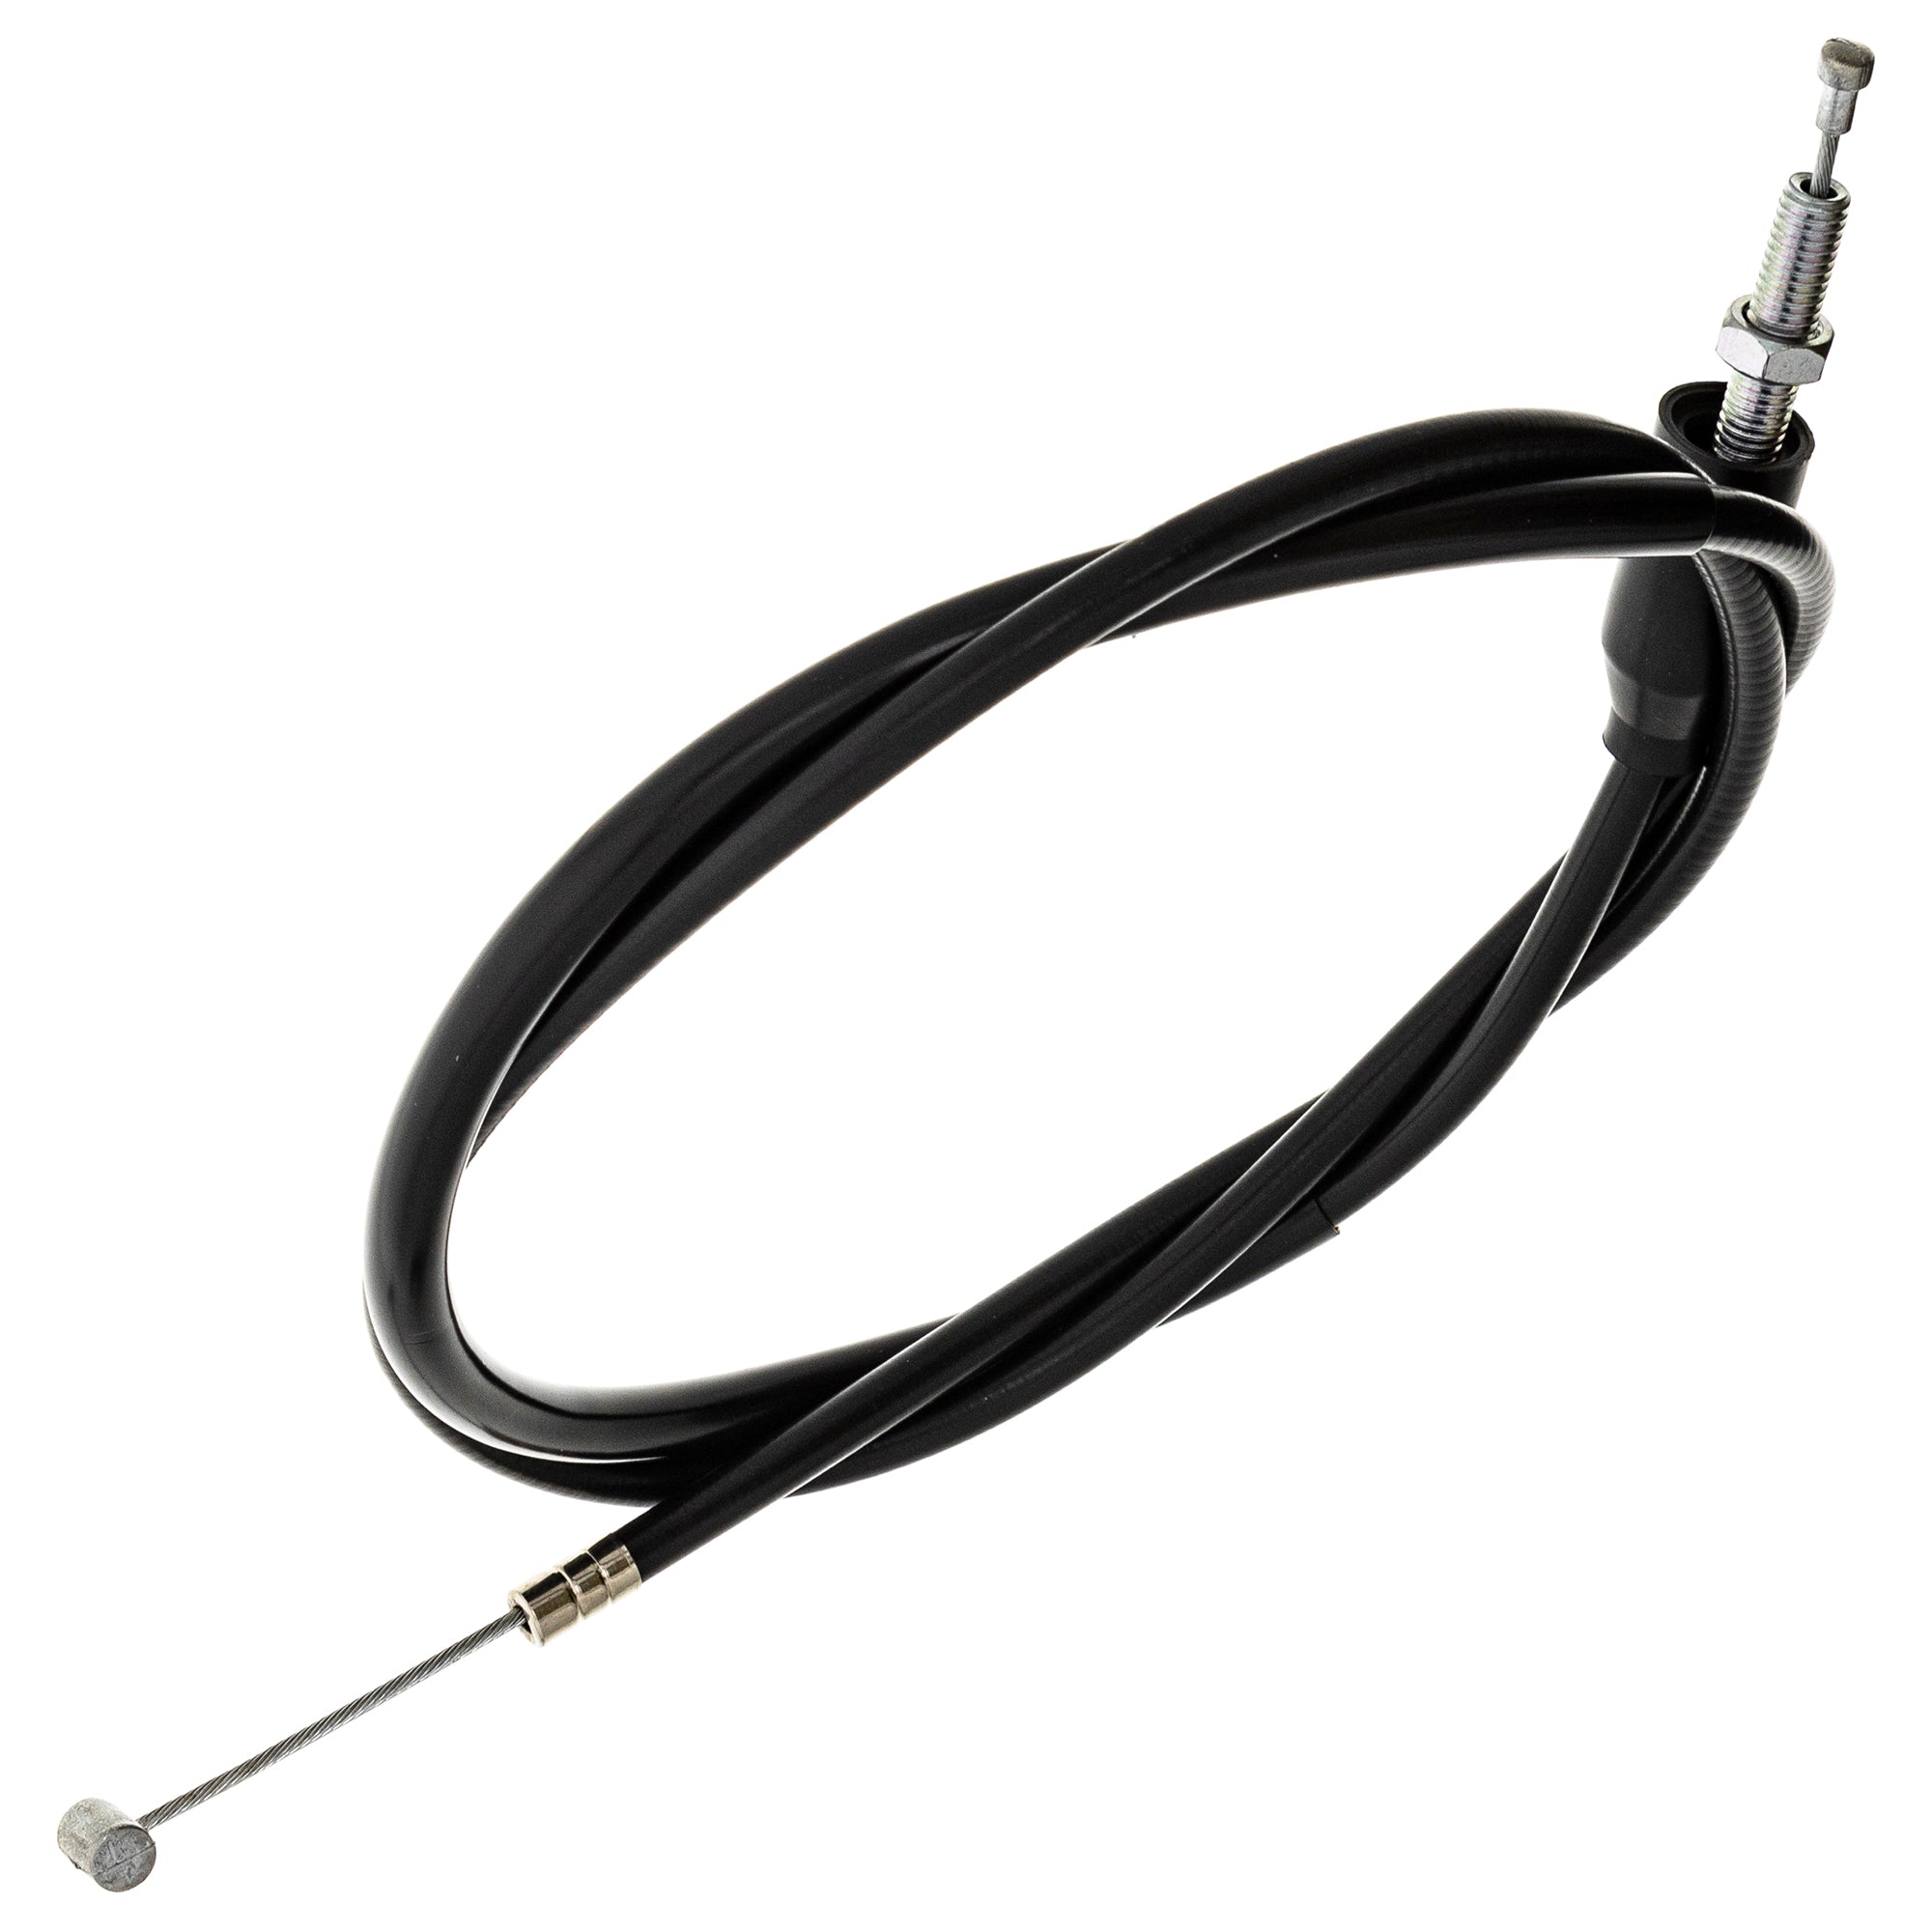 Clutch Cable for Suzuki GS250T GS300L GS400 GS400X GS425 GS450T